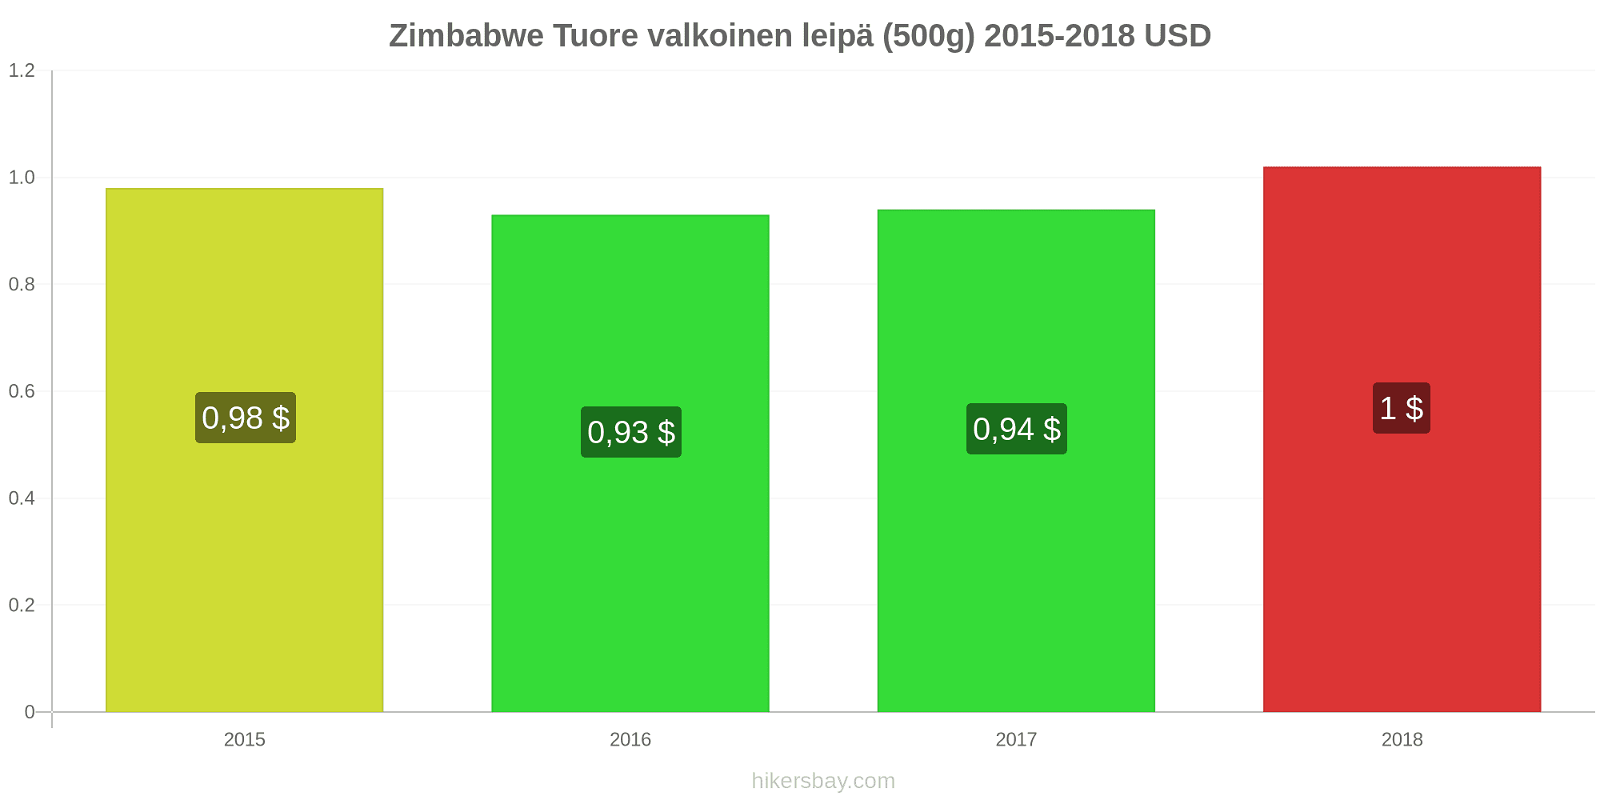 Zimbabwe hintojen muutokset Tuore valkoinen leipä (500g) hikersbay.com